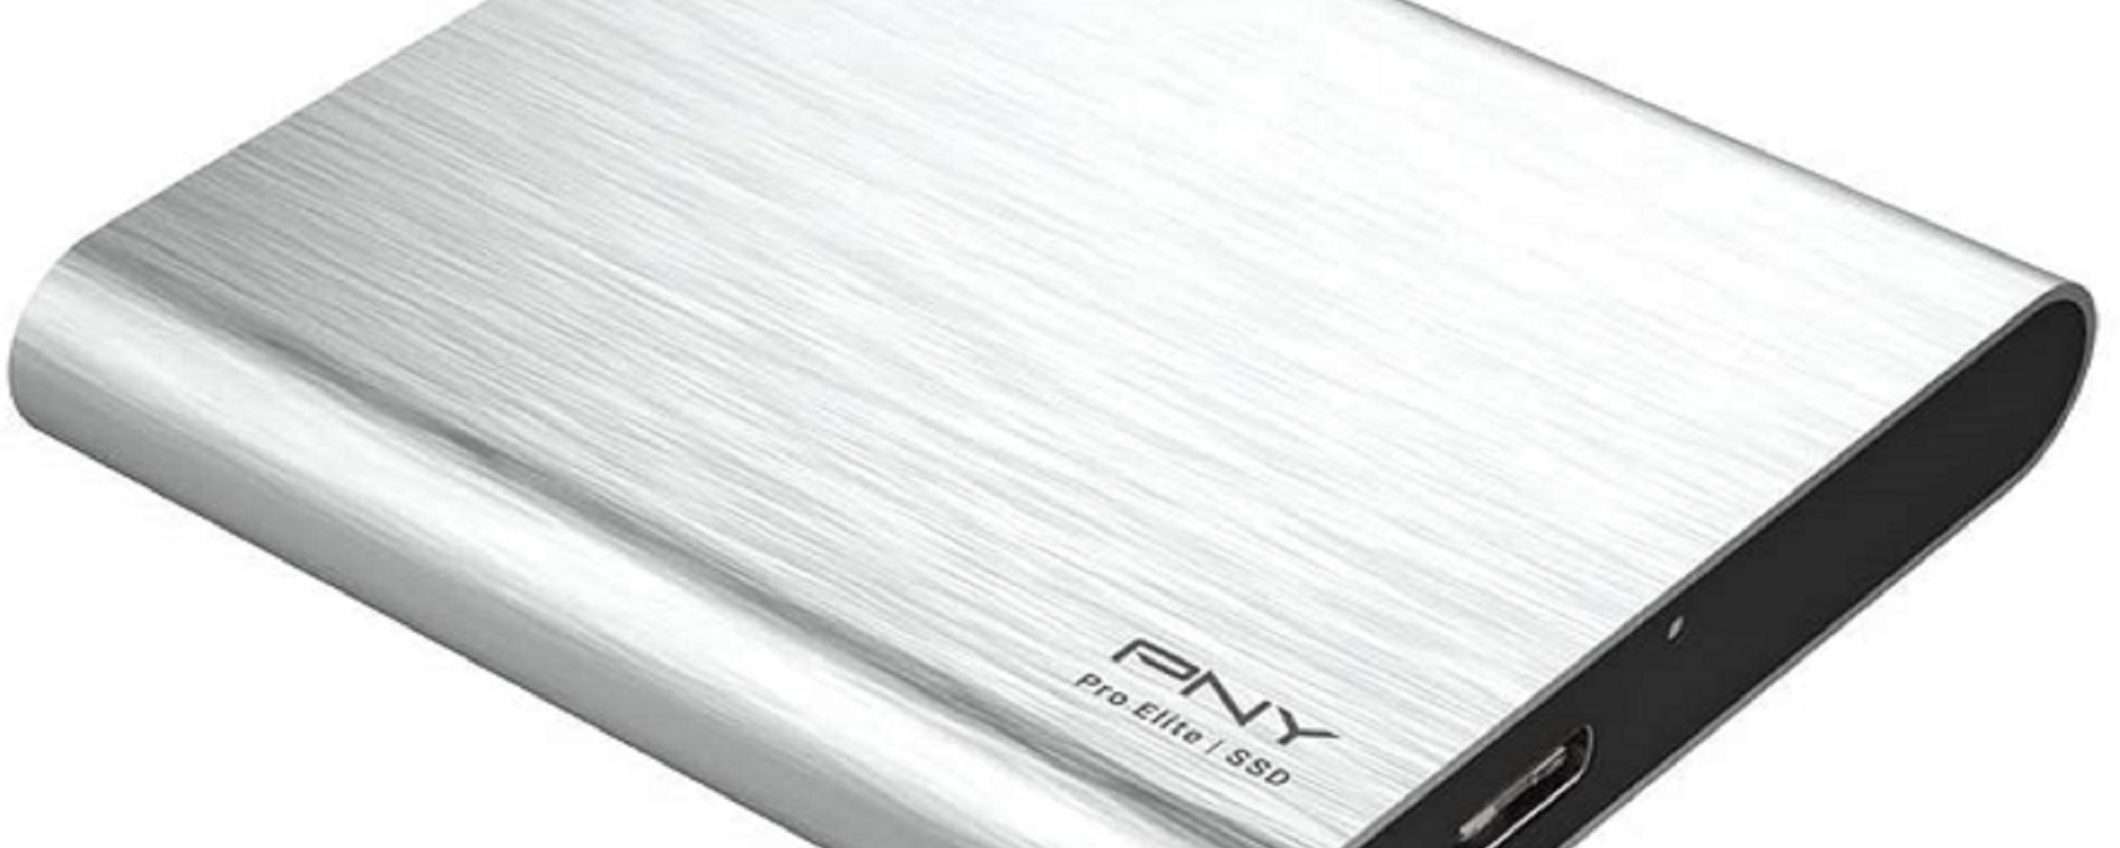 SSD PNY portatile da 500 GB a un prezzo imbattibile!